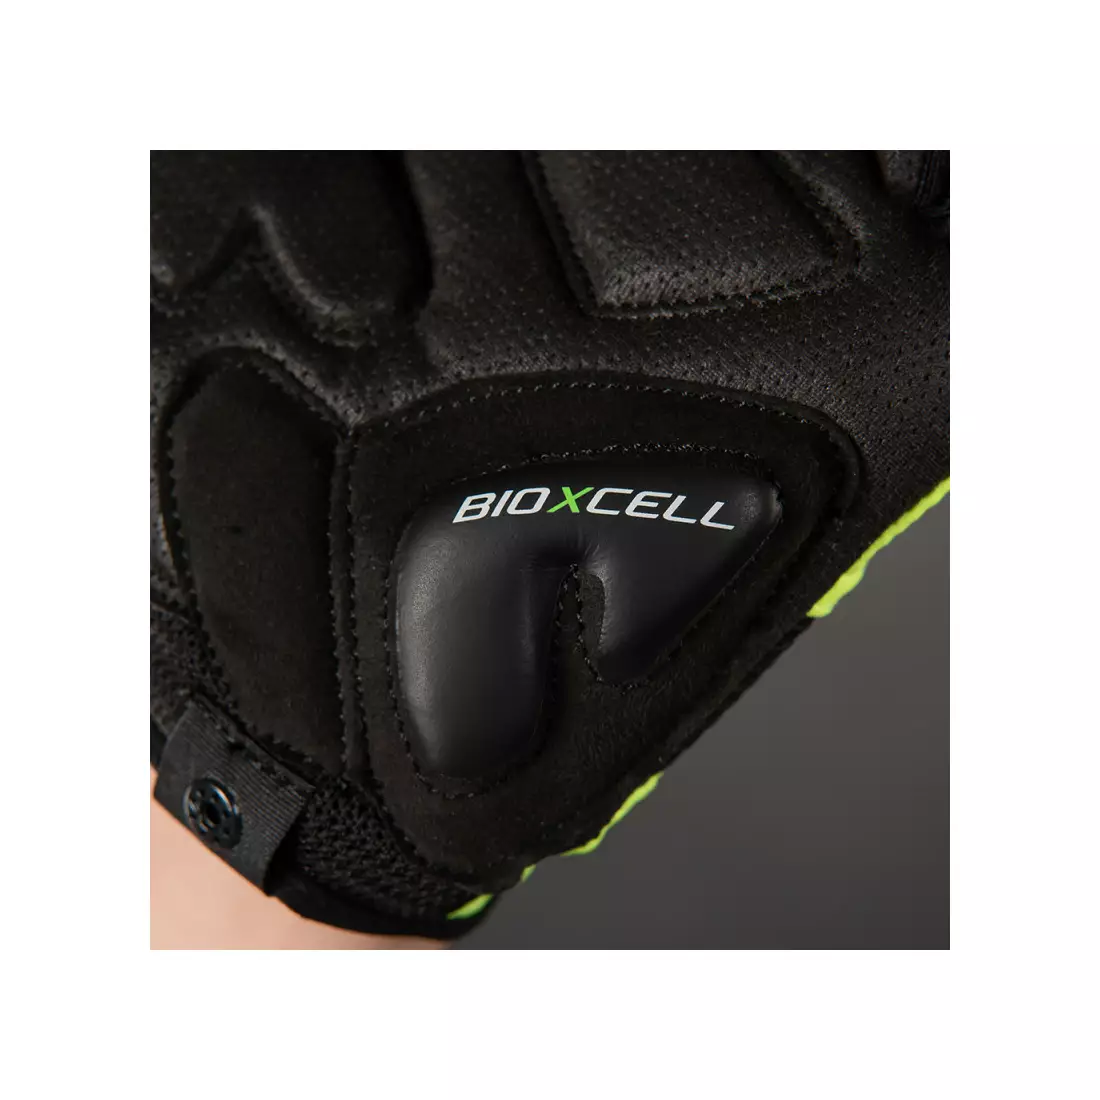 CHIBA cyklistické rukavice bioxcell červené 3060120